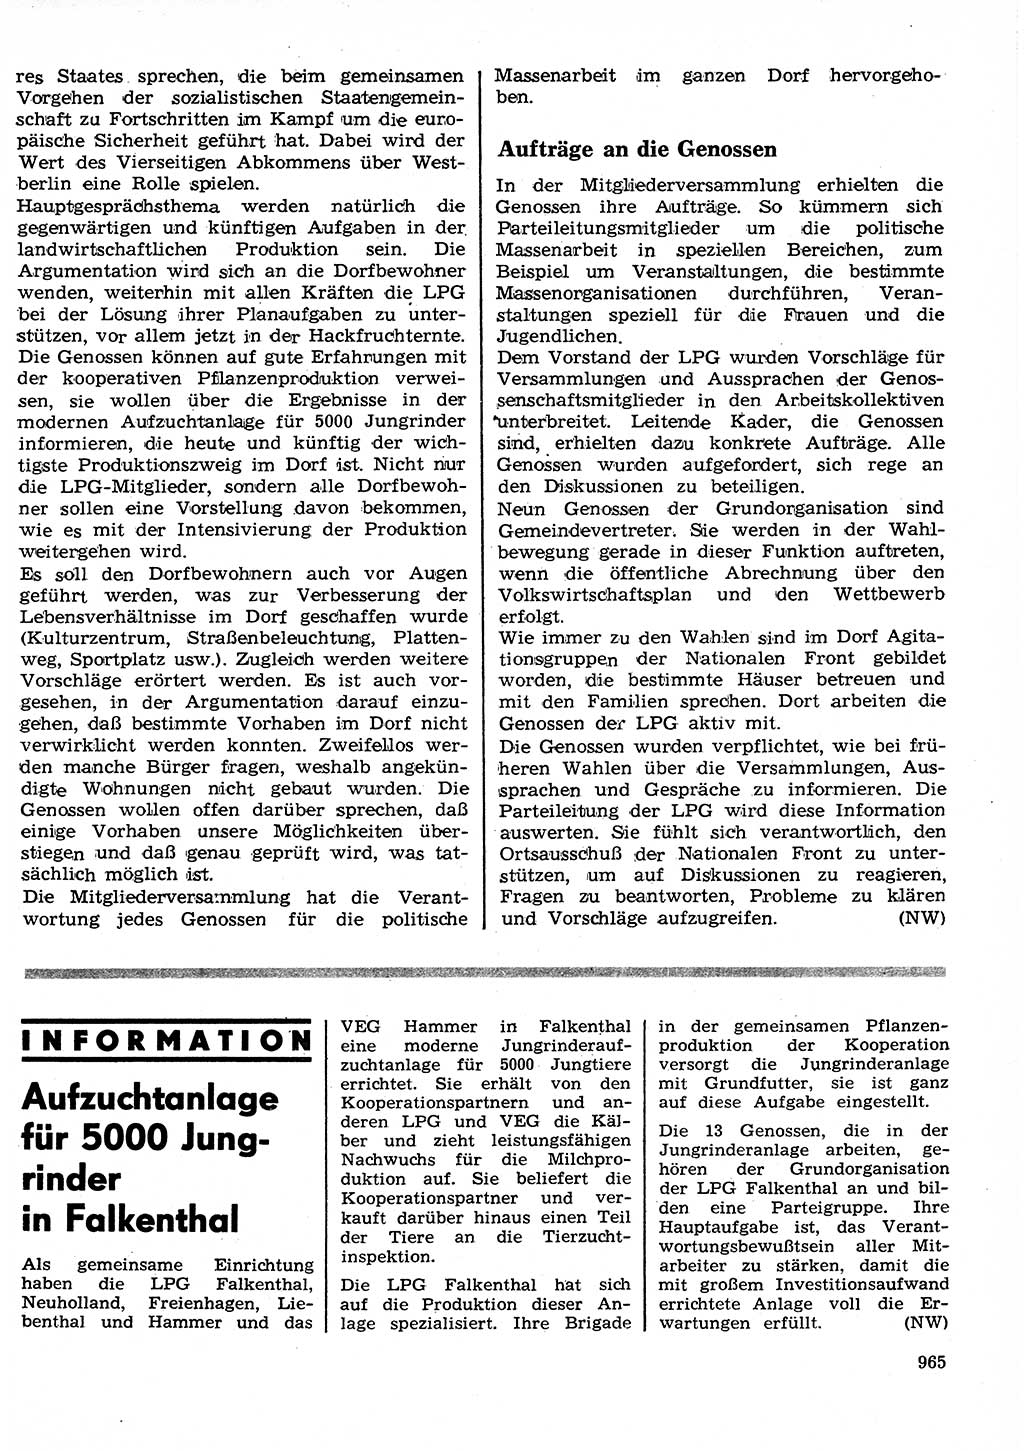 Neuer Weg (NW), Organ des Zentralkomitees (ZK) der SED (Sozialistische Einheitspartei Deutschlands) für Fragen des Parteilebens, 26. Jahrgang [Deutsche Demokratische Republik (DDR)] 1971, Seite 965 (NW ZK SED DDR 1971, S. 965)